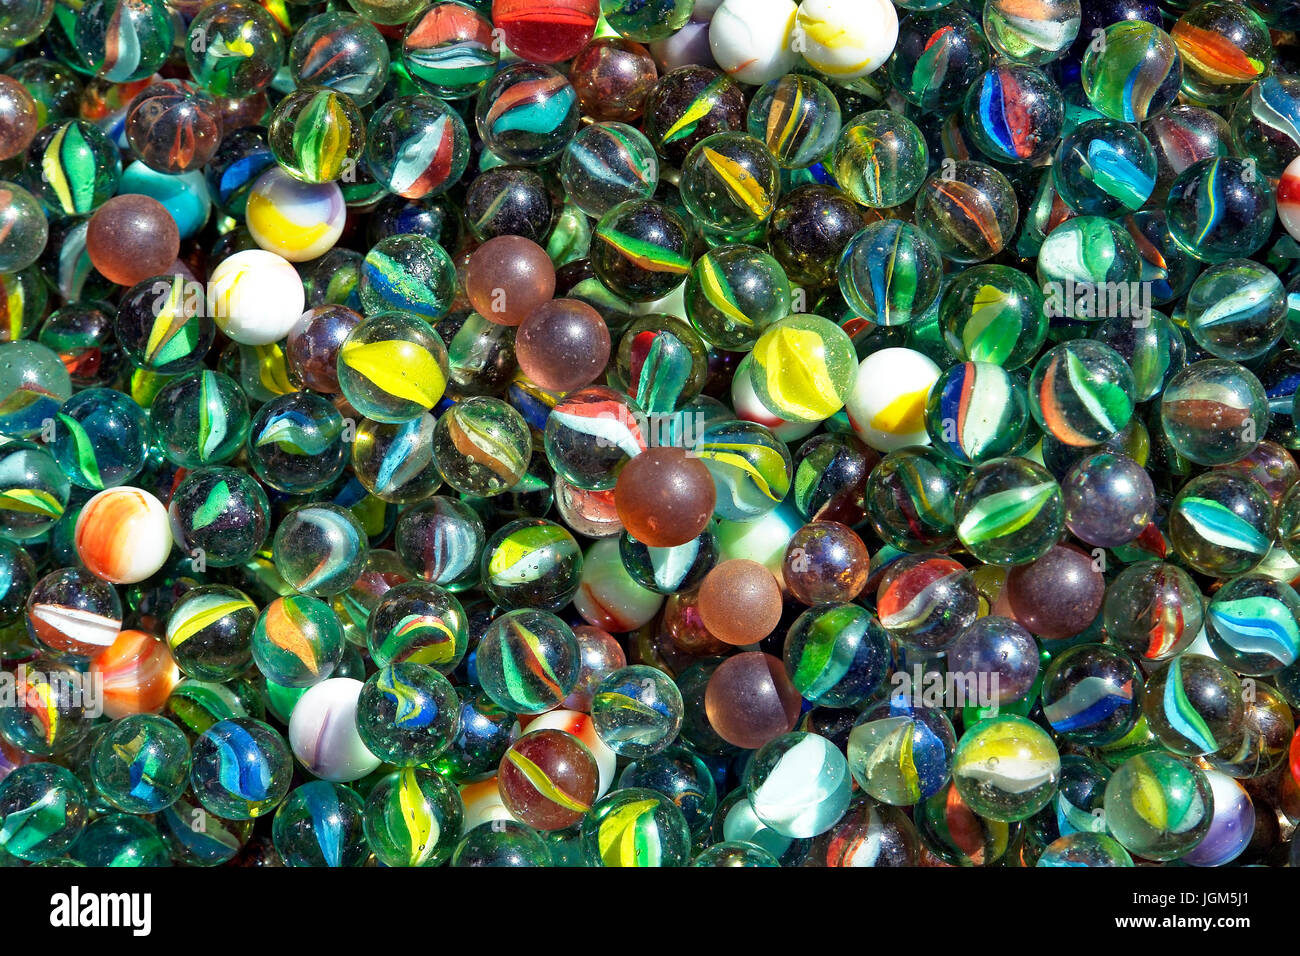 https://c8.alamy.com/compes/jgm5j1/cristal-de-vidrio-canicas-canicas-jugar-juguetes-brillantes-de-colores-de-colores-colorido-bola-de-cristal-bolas-la-cantidad-el-formato-horizontal-fotografia-vidrio-m-jgm5j1.jpg